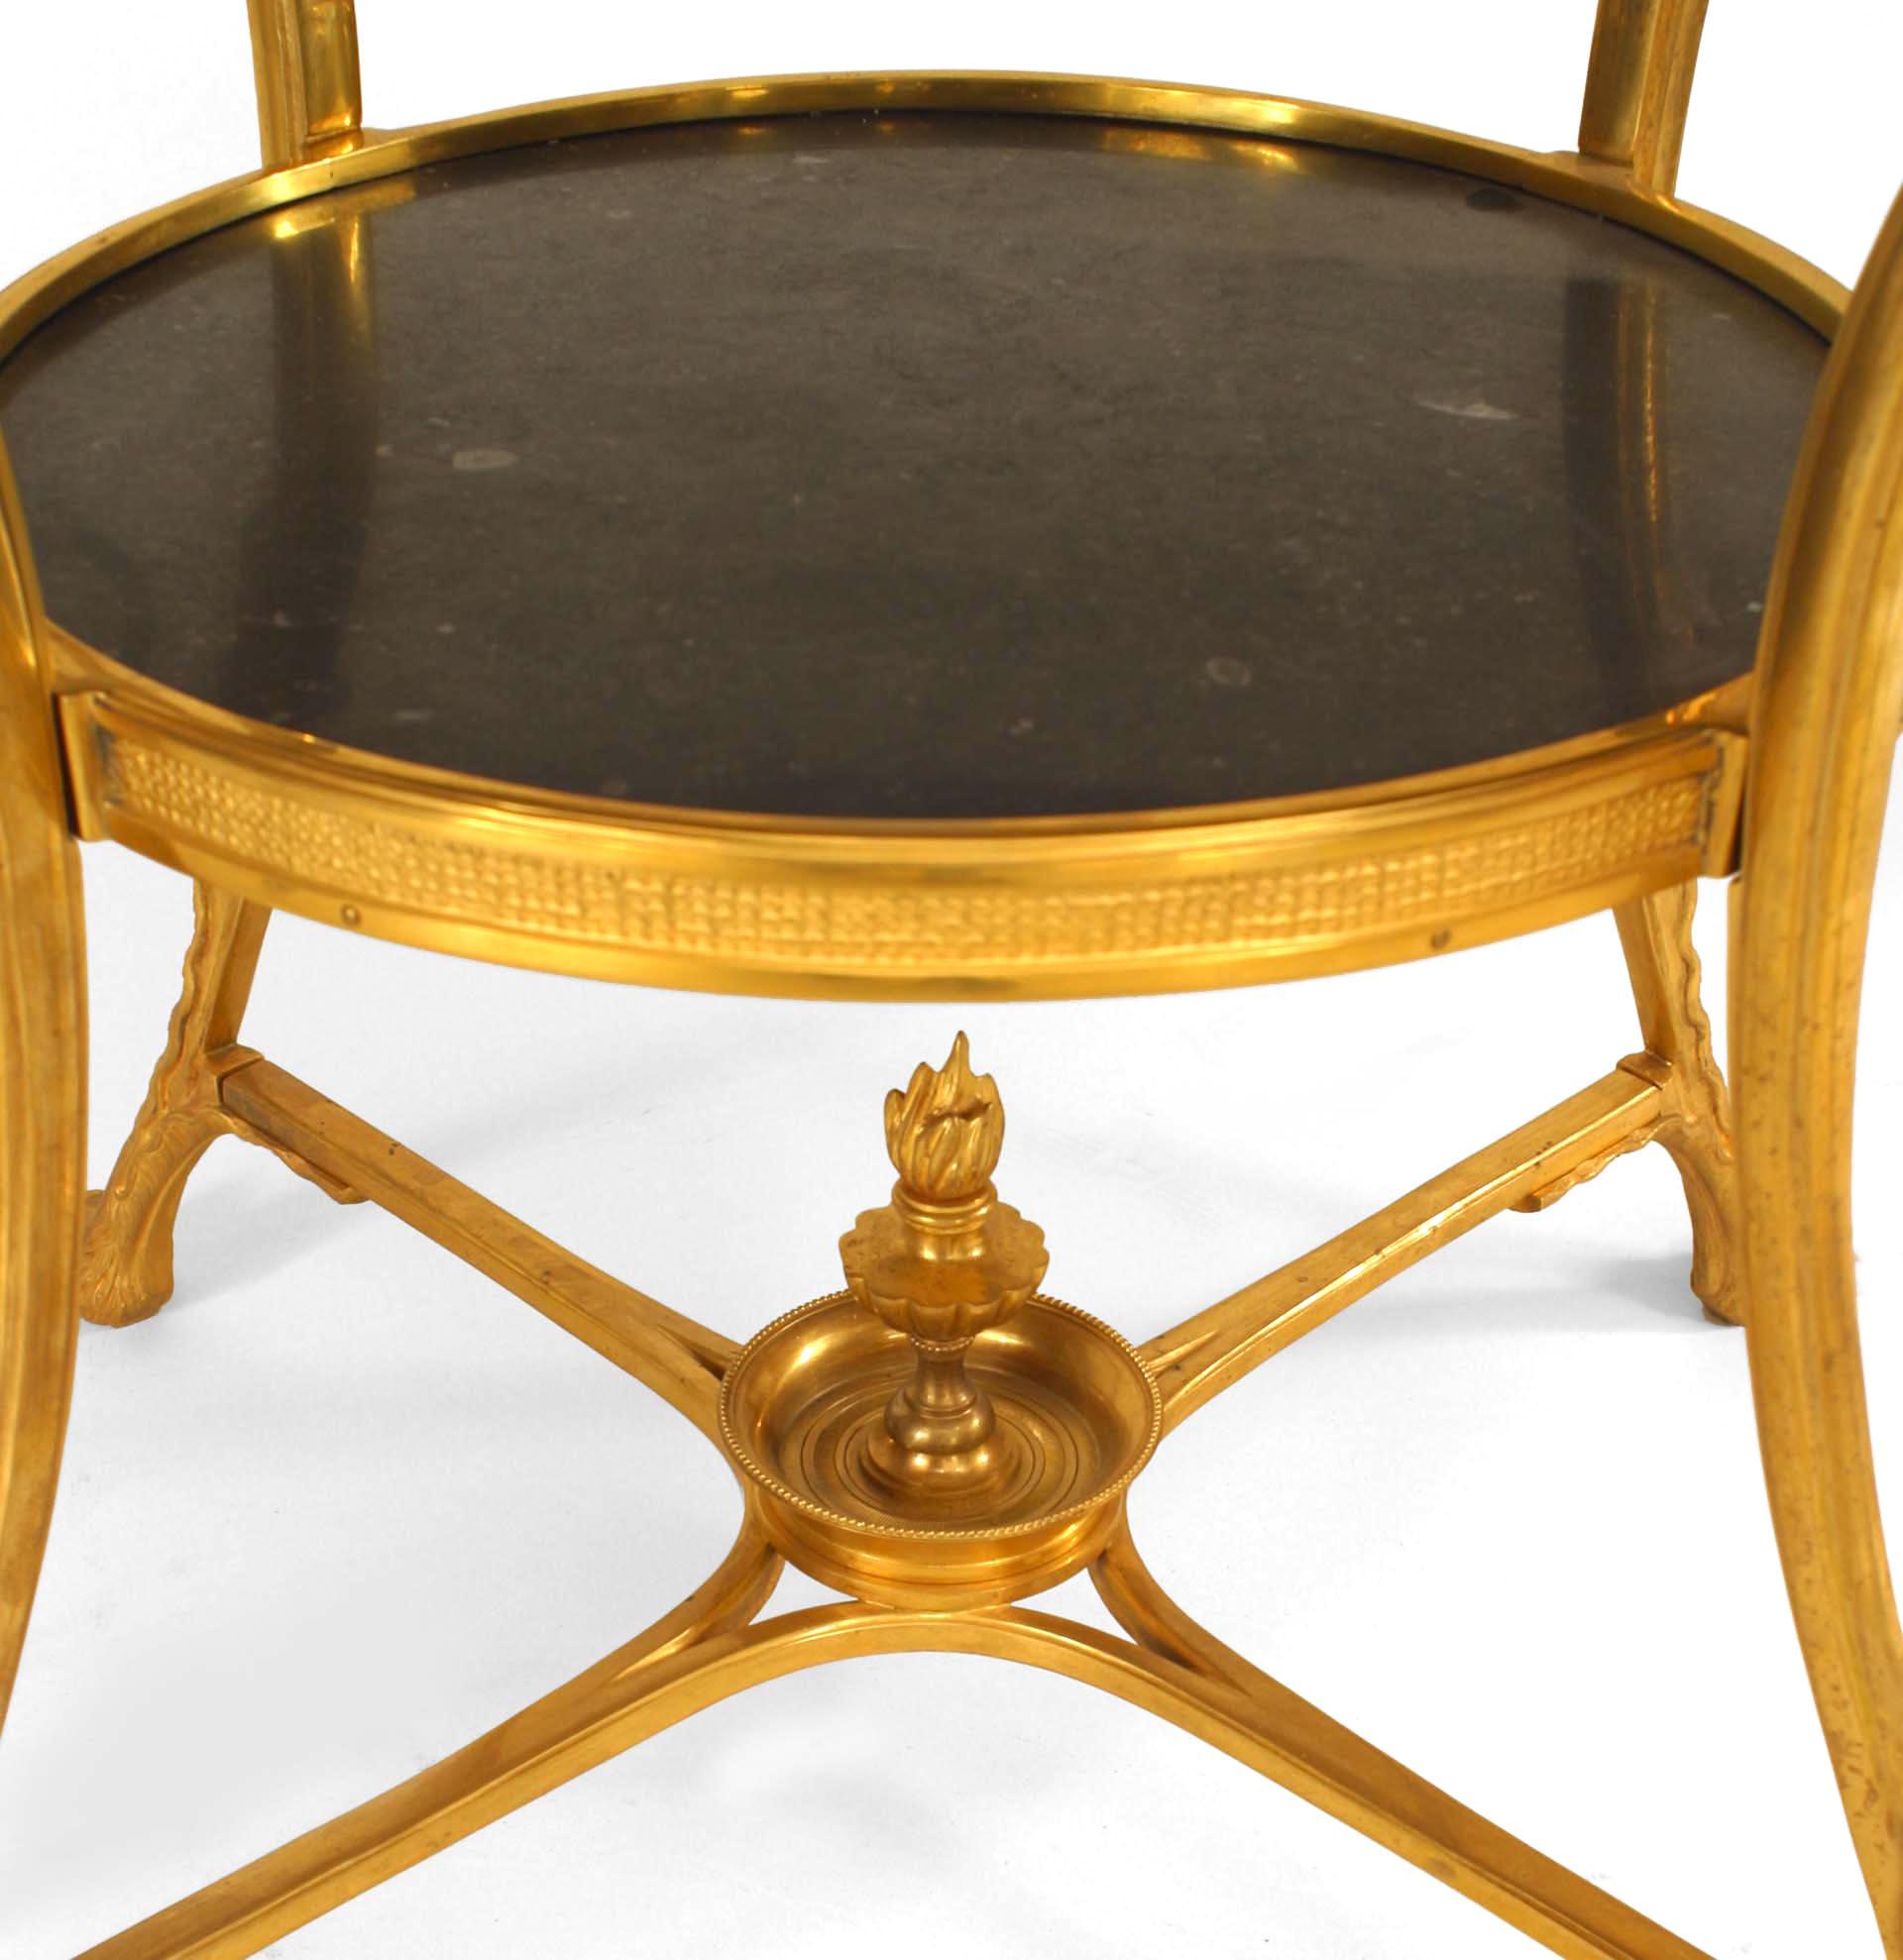 Table d'appoint de style Empire français en bronze à 4 pieds terminés par des têtes de lion tenant des anneaux avec un plateau rond en marbre noir et une étagère.